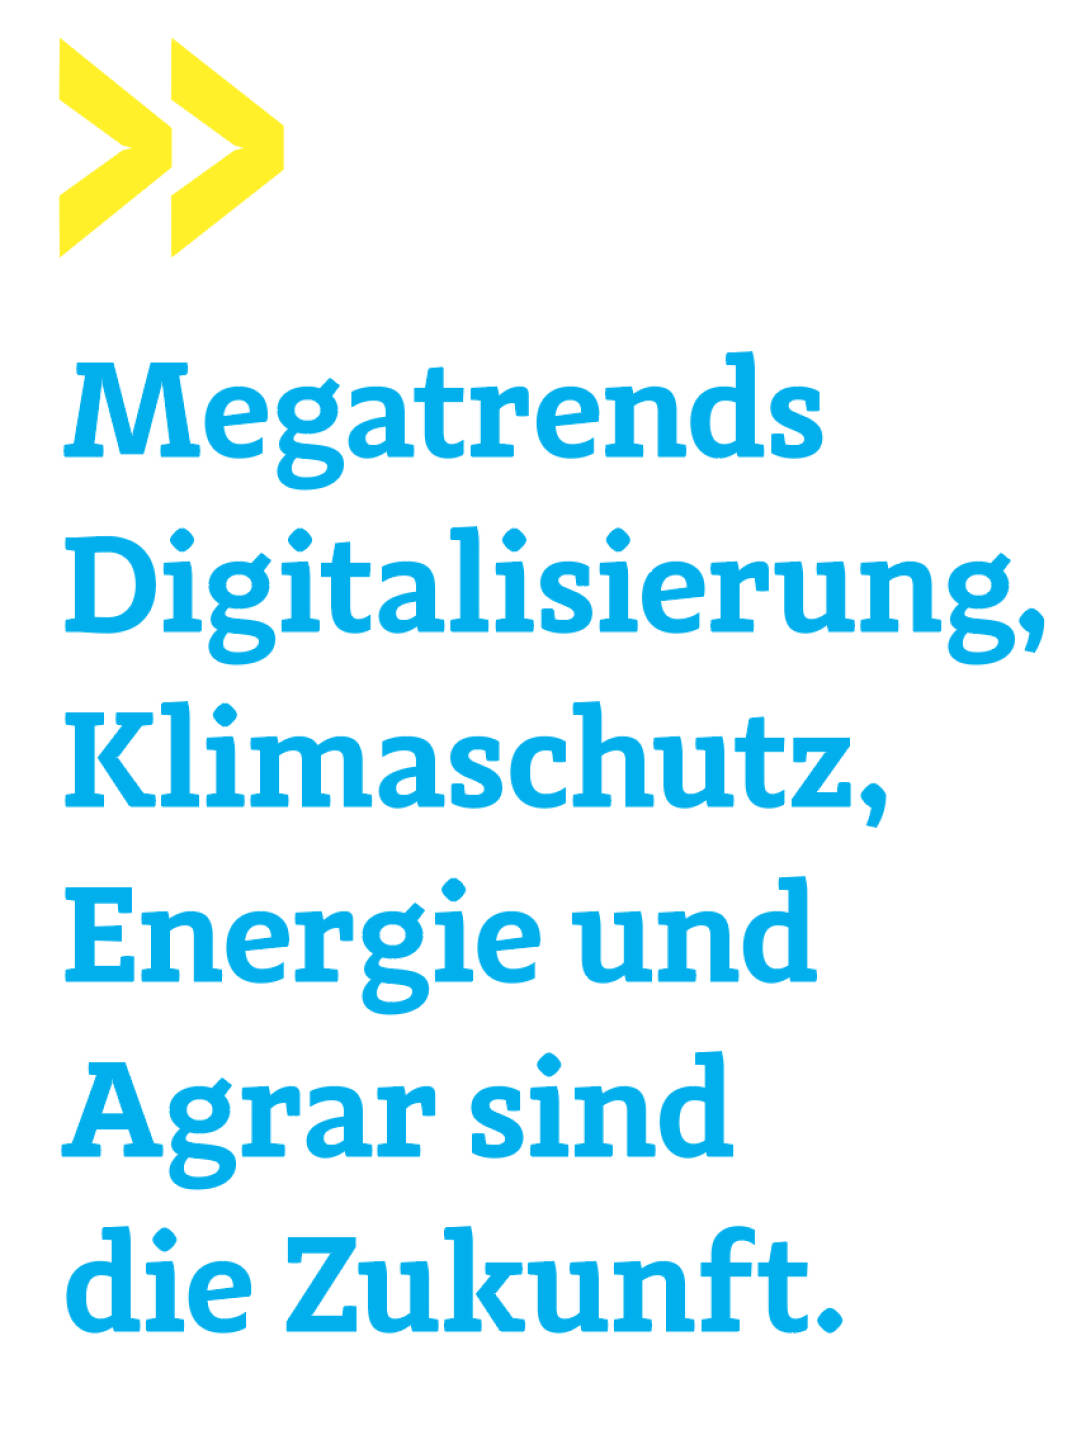 Megatrends Digitalisierung, Klimaschutz, Energie und Agrar sind die Zukunft.
Gregor Rosinger, Rosinger Group